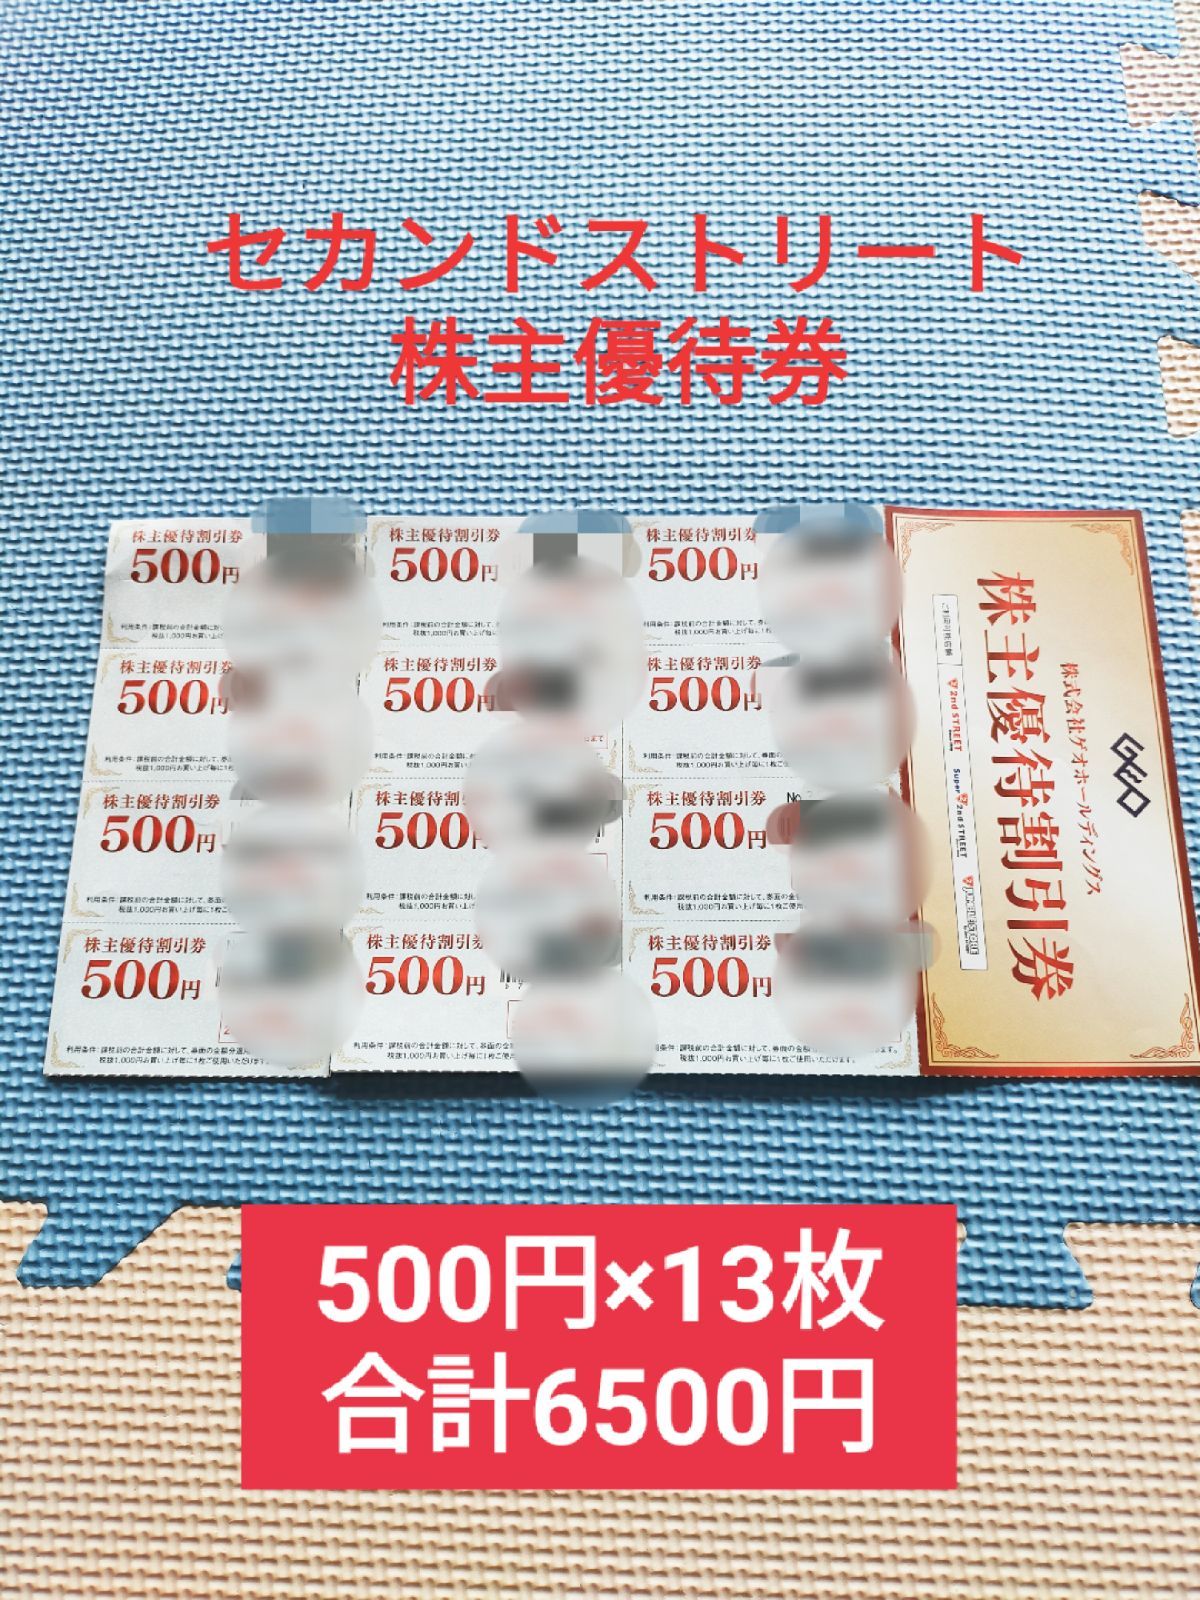 購買 ゲオホールディングス 株主優待券4,000円分 期限23年6末 tco.it